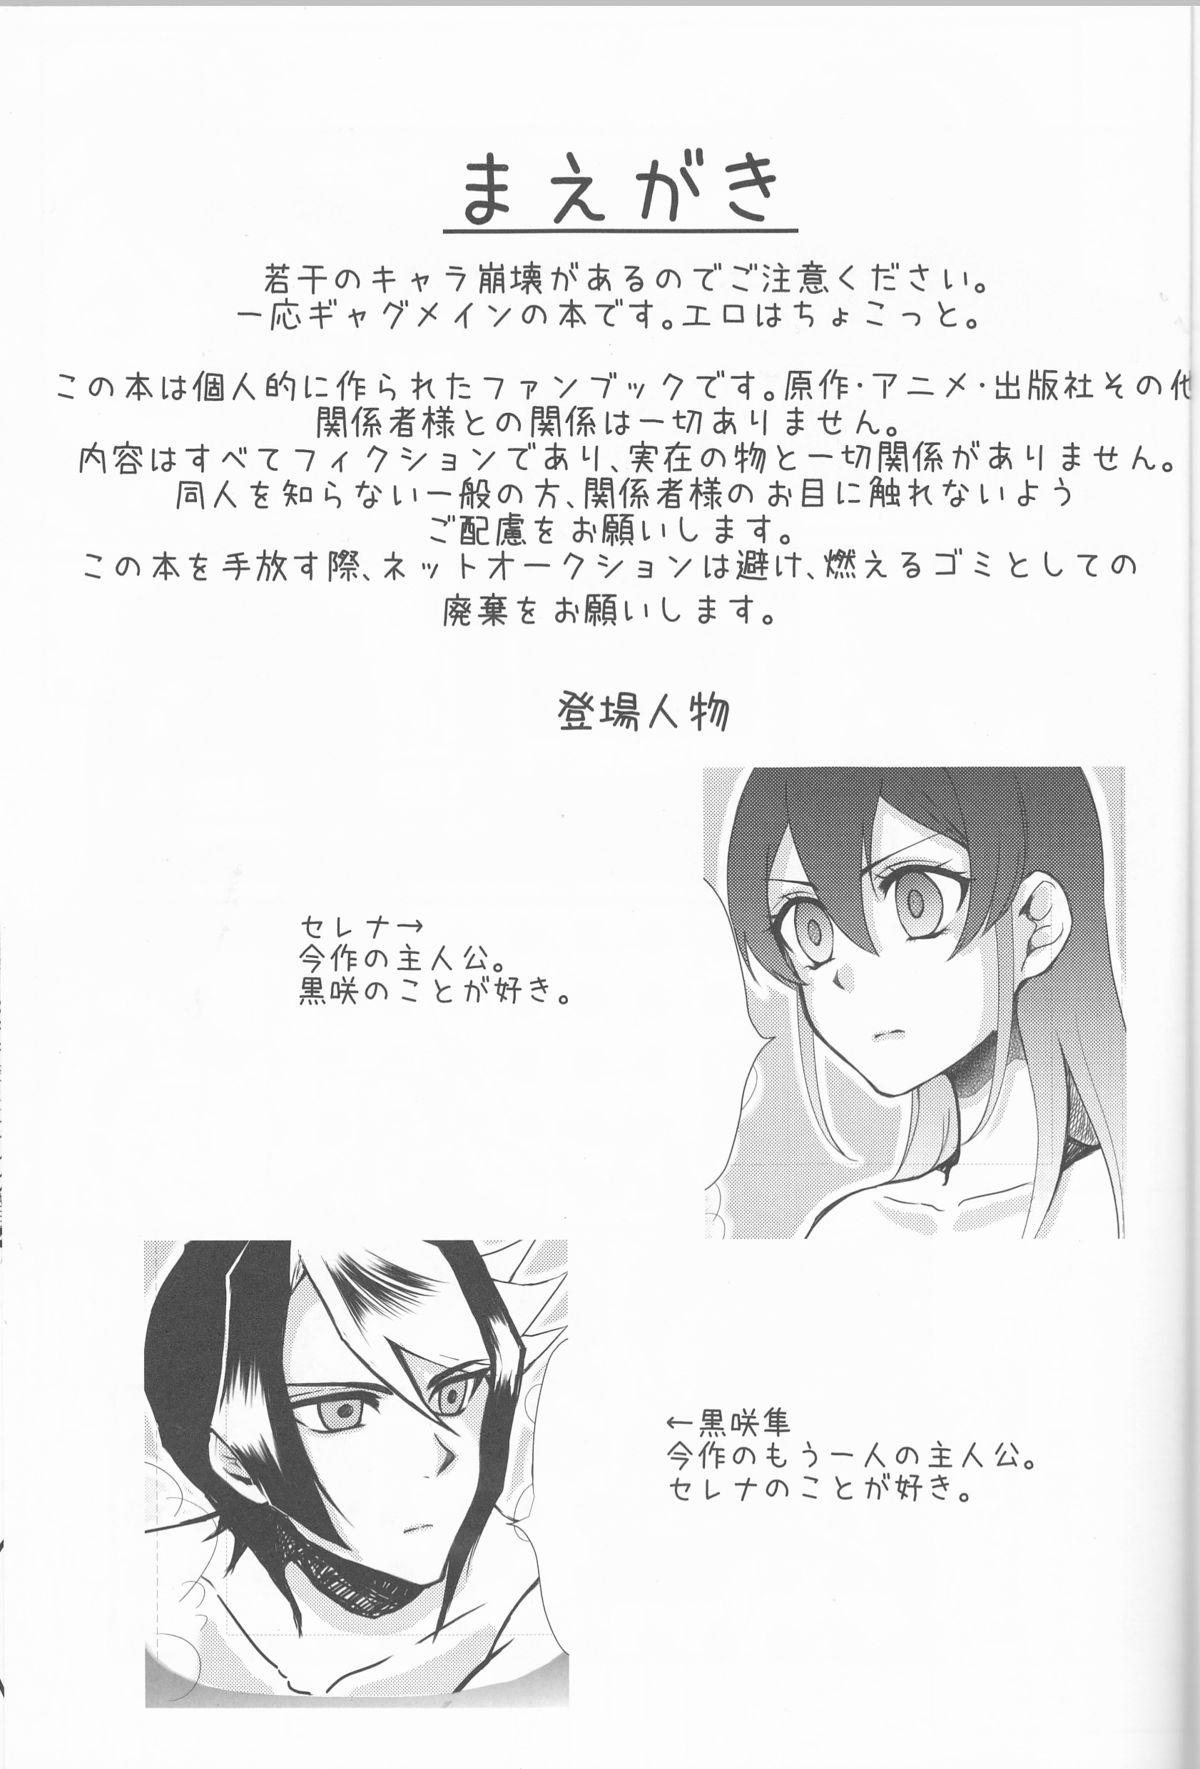 High Definition Hoshoku Kankei ni Aru Serena to Shun ga Renai Kanjou o Idaku to Kou Naru. - Yu-gi-oh arc-v Erotic - Page 2